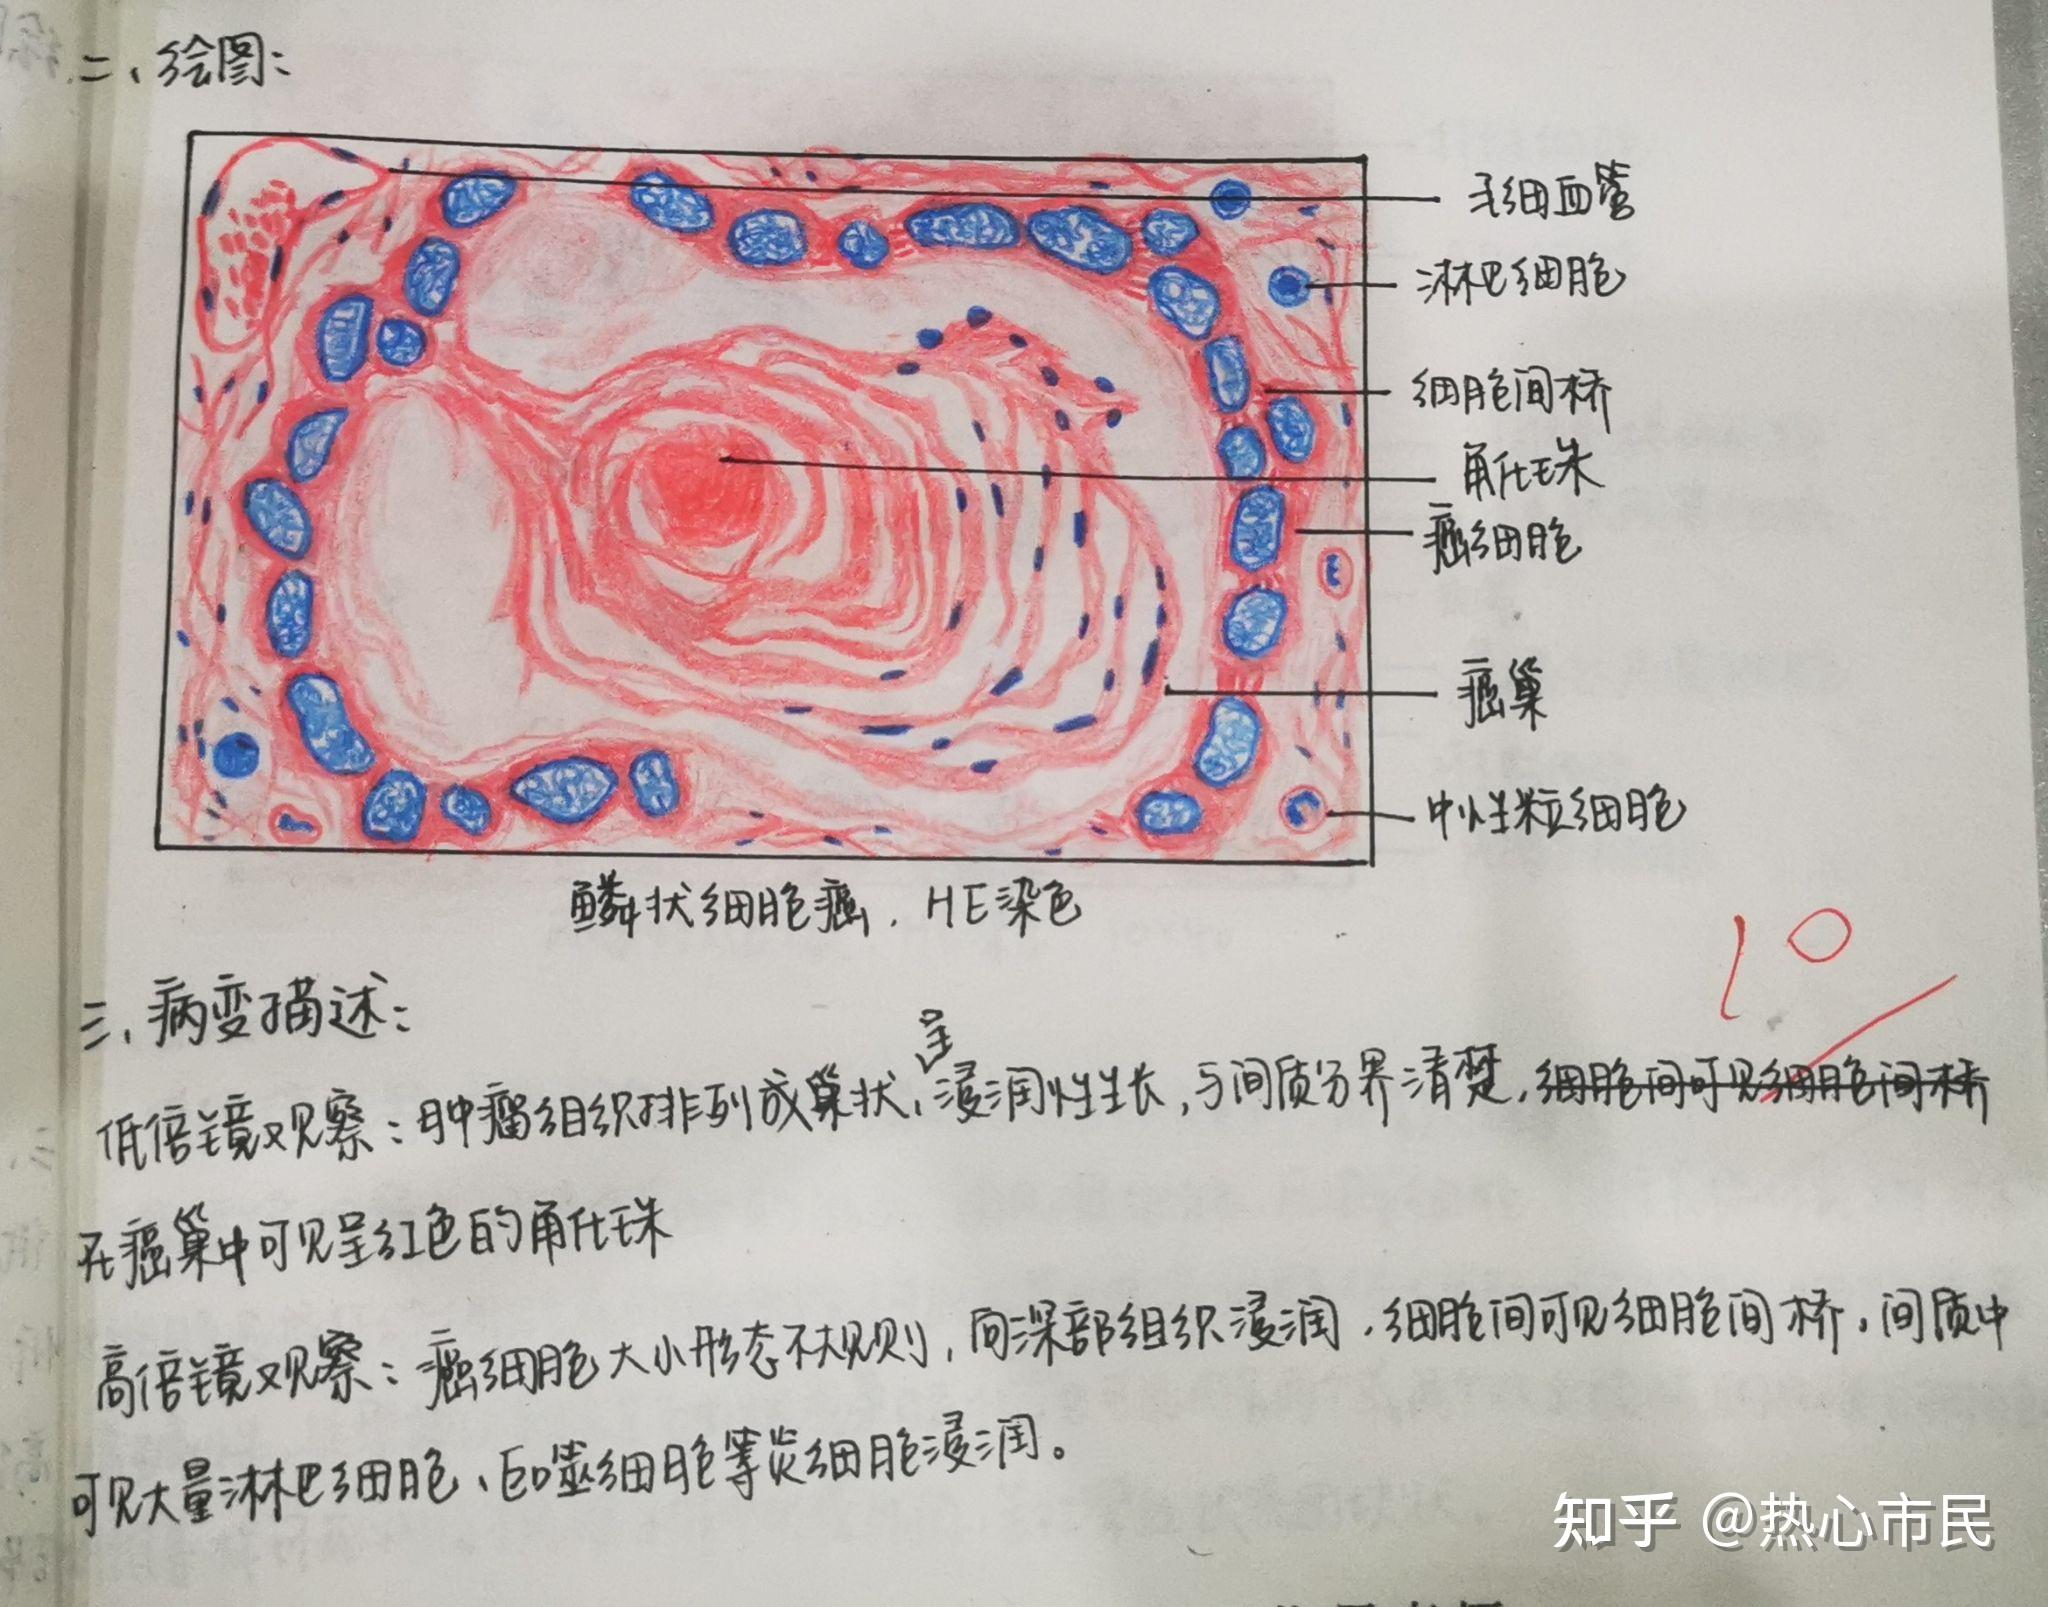 荚膜手绘图红蓝铅笔图片